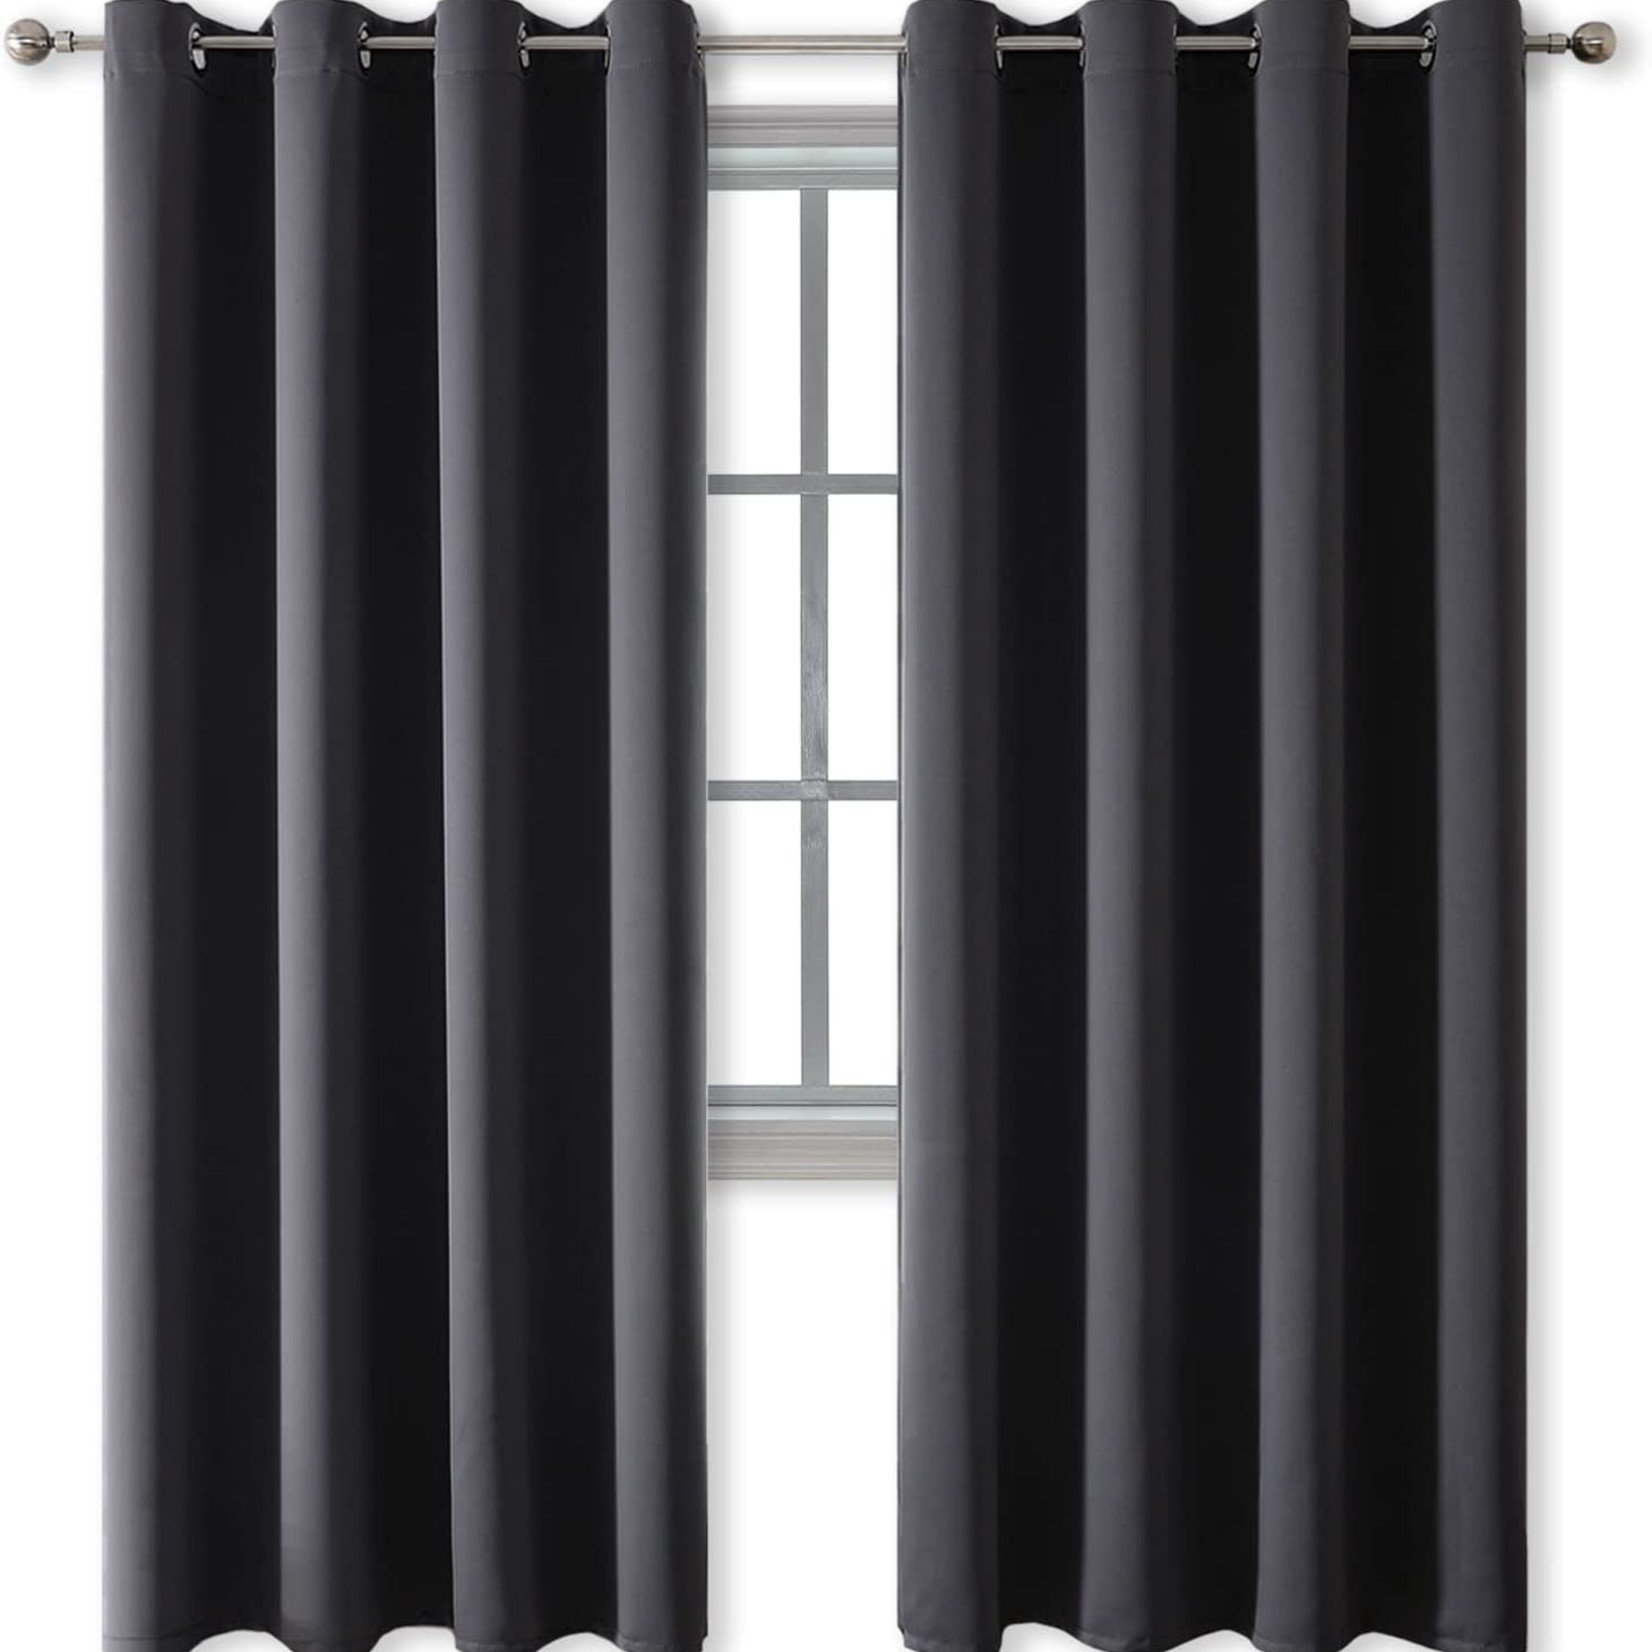 Rutterllow Blackout Curtains - Dark Grey - 52 X 84